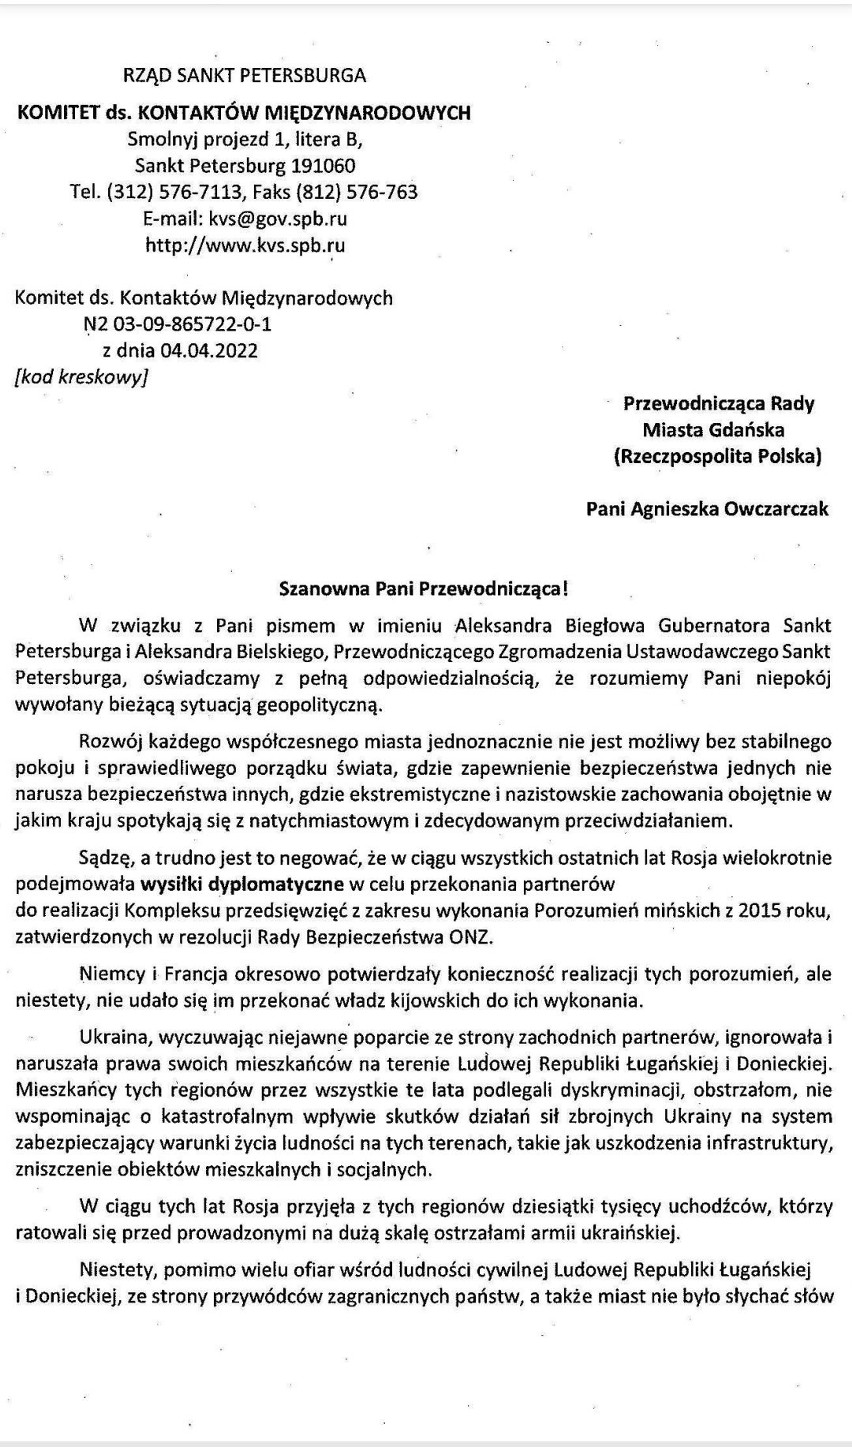 "Ta odpowiedź pokazuje, że postąpiliśmy słusznie". Władze Sankt Petersburga odpowiadają Radzie Miasta Gdańska po zerwaniu współpracy